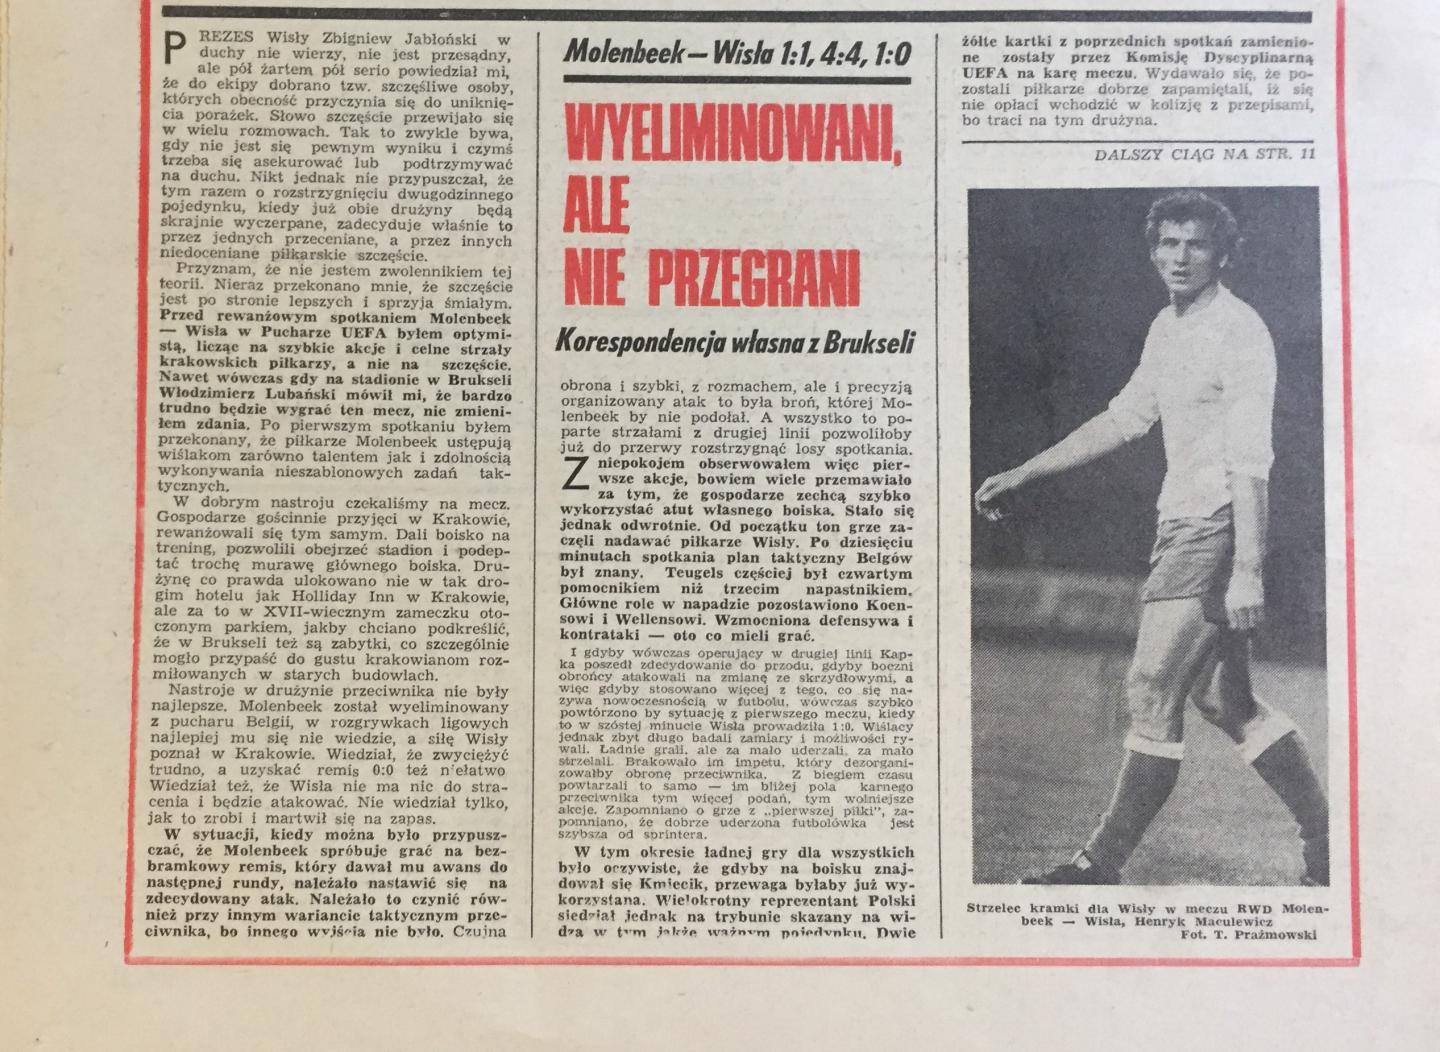 Piłka Nożna po meczu RWD Molenbeek - Wisła Kraków 1:1, k. 5-4 (03.11.1976)